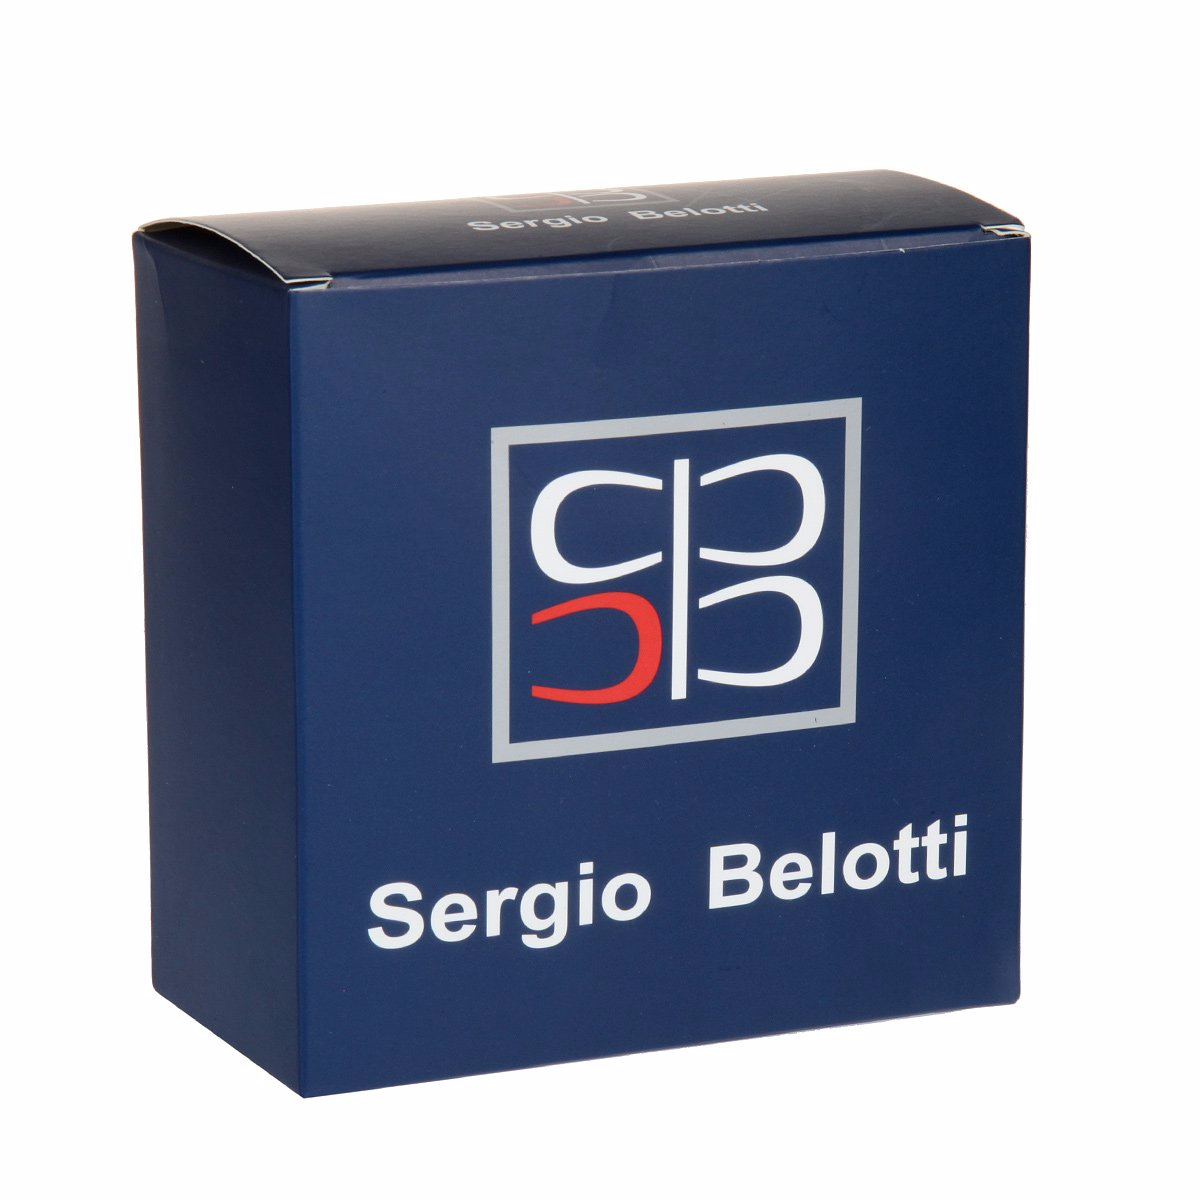 Ремень
Sergio Belotti
6051/35 Vit.VolanatoT.Mor Ремни и пояса